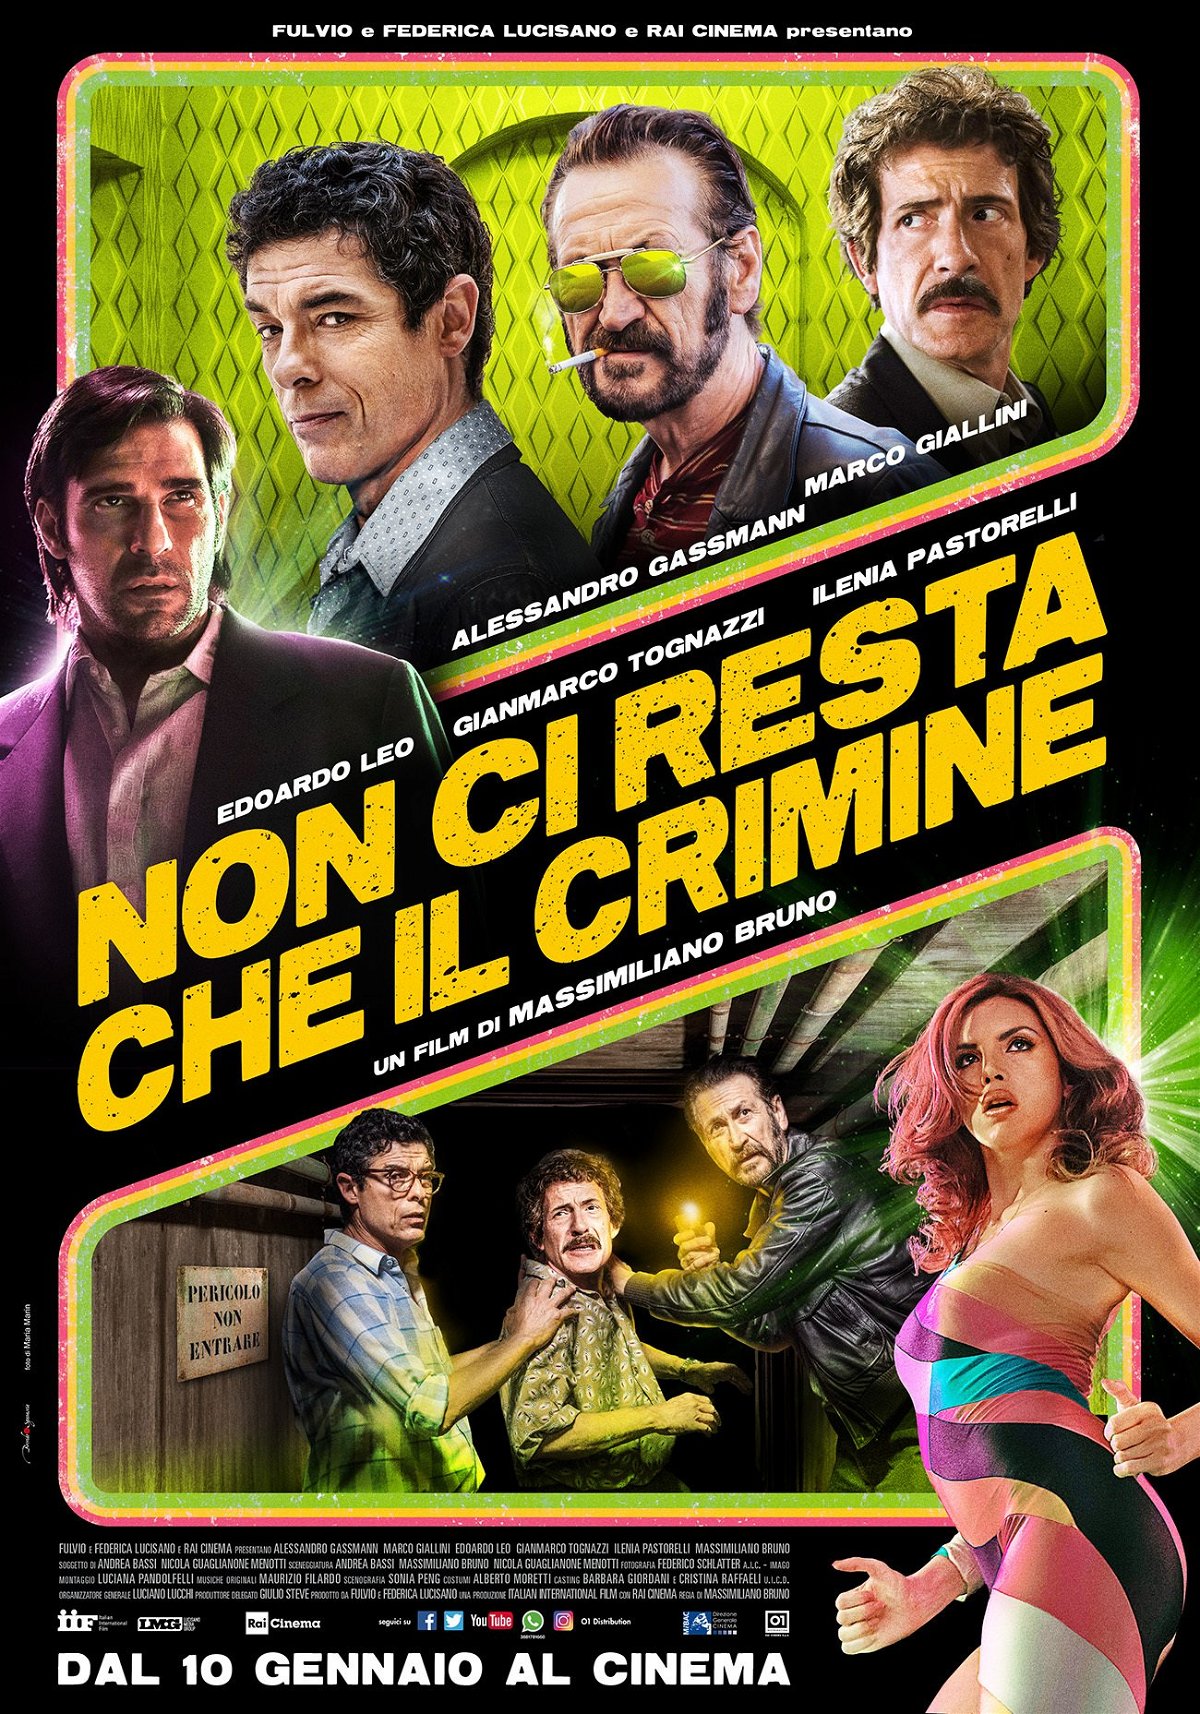 Il poster del nuovo film di Massimiliano Bruno